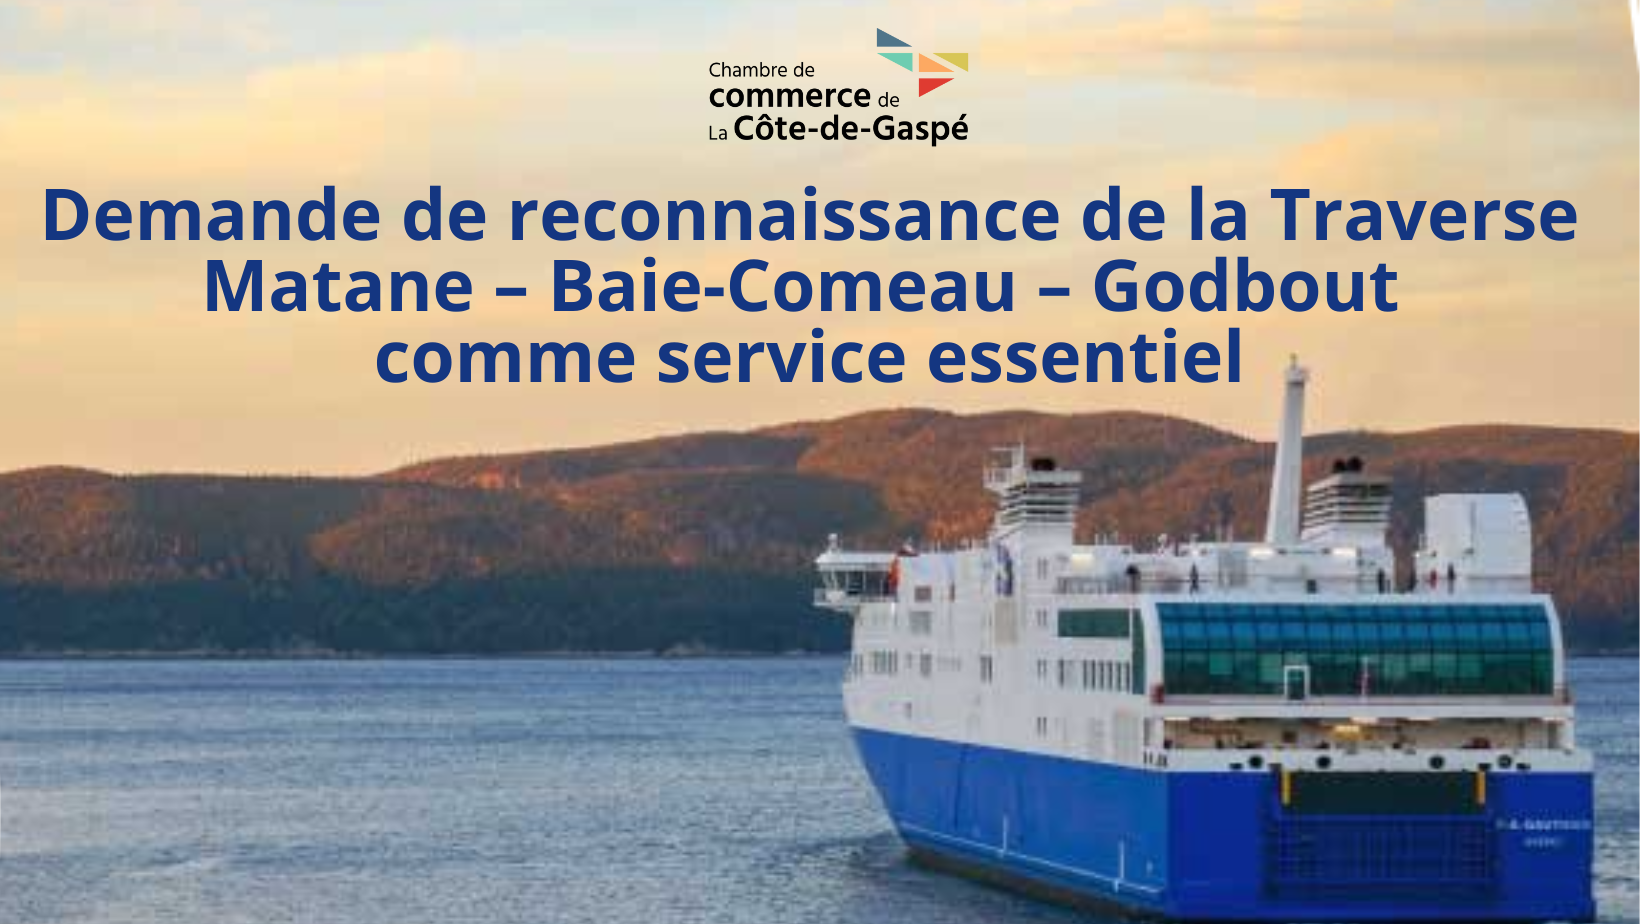 Demande de reconnaissance de la Traverse Matane – Baie-Comeau – Godbout comme service essentiel